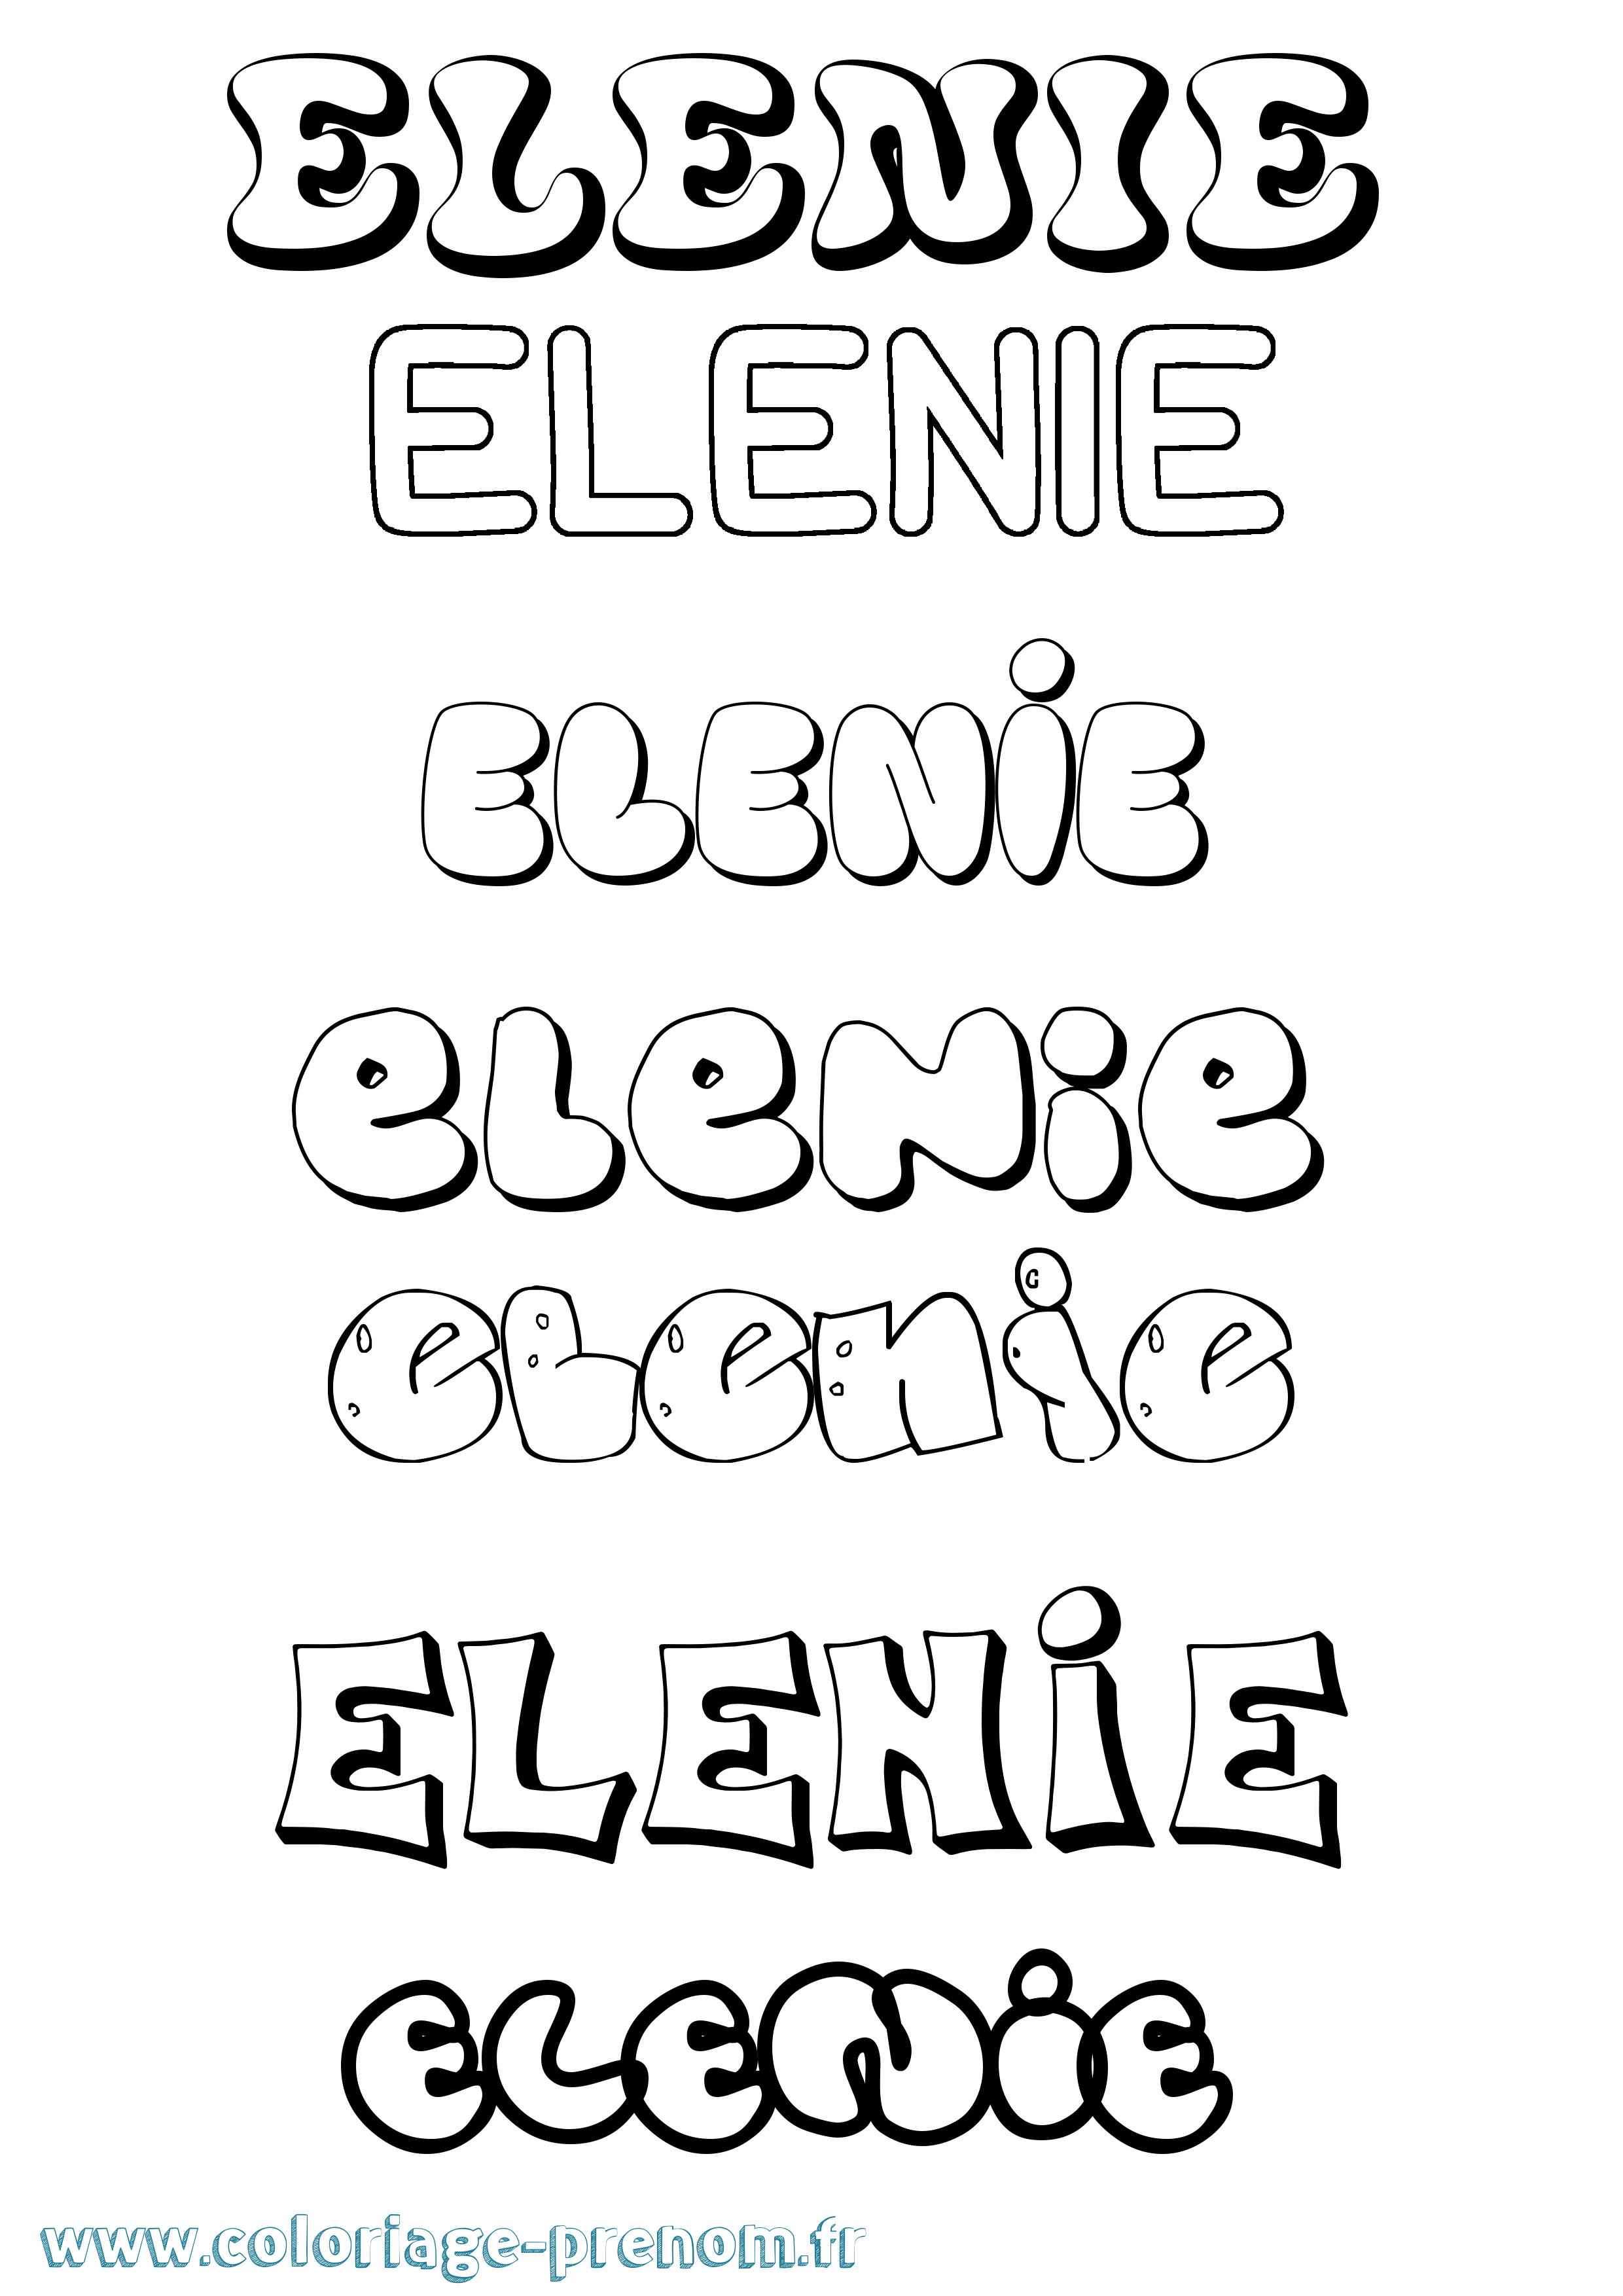 Coloriage prénom Elenie Bubble